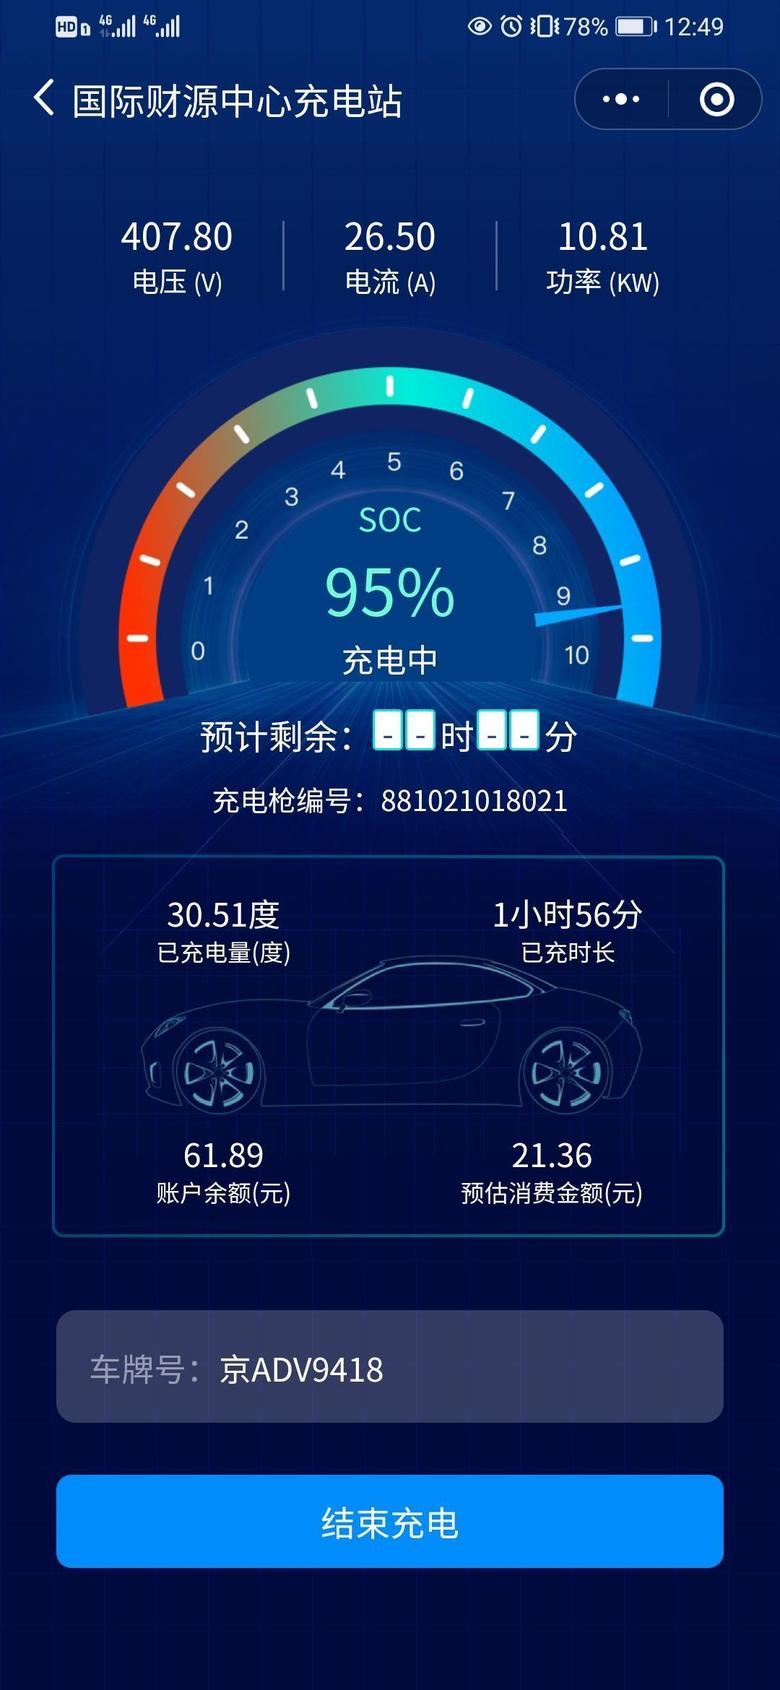 北京eu5 最近刷新系统的朋友有没？为啥快充功率变慢了，也太慢了吧充电两个小时充了30度电，2个小时一直都在电池加热。这什么情况啊？跟以前差距好大。我都不想要这车了，充电这么久